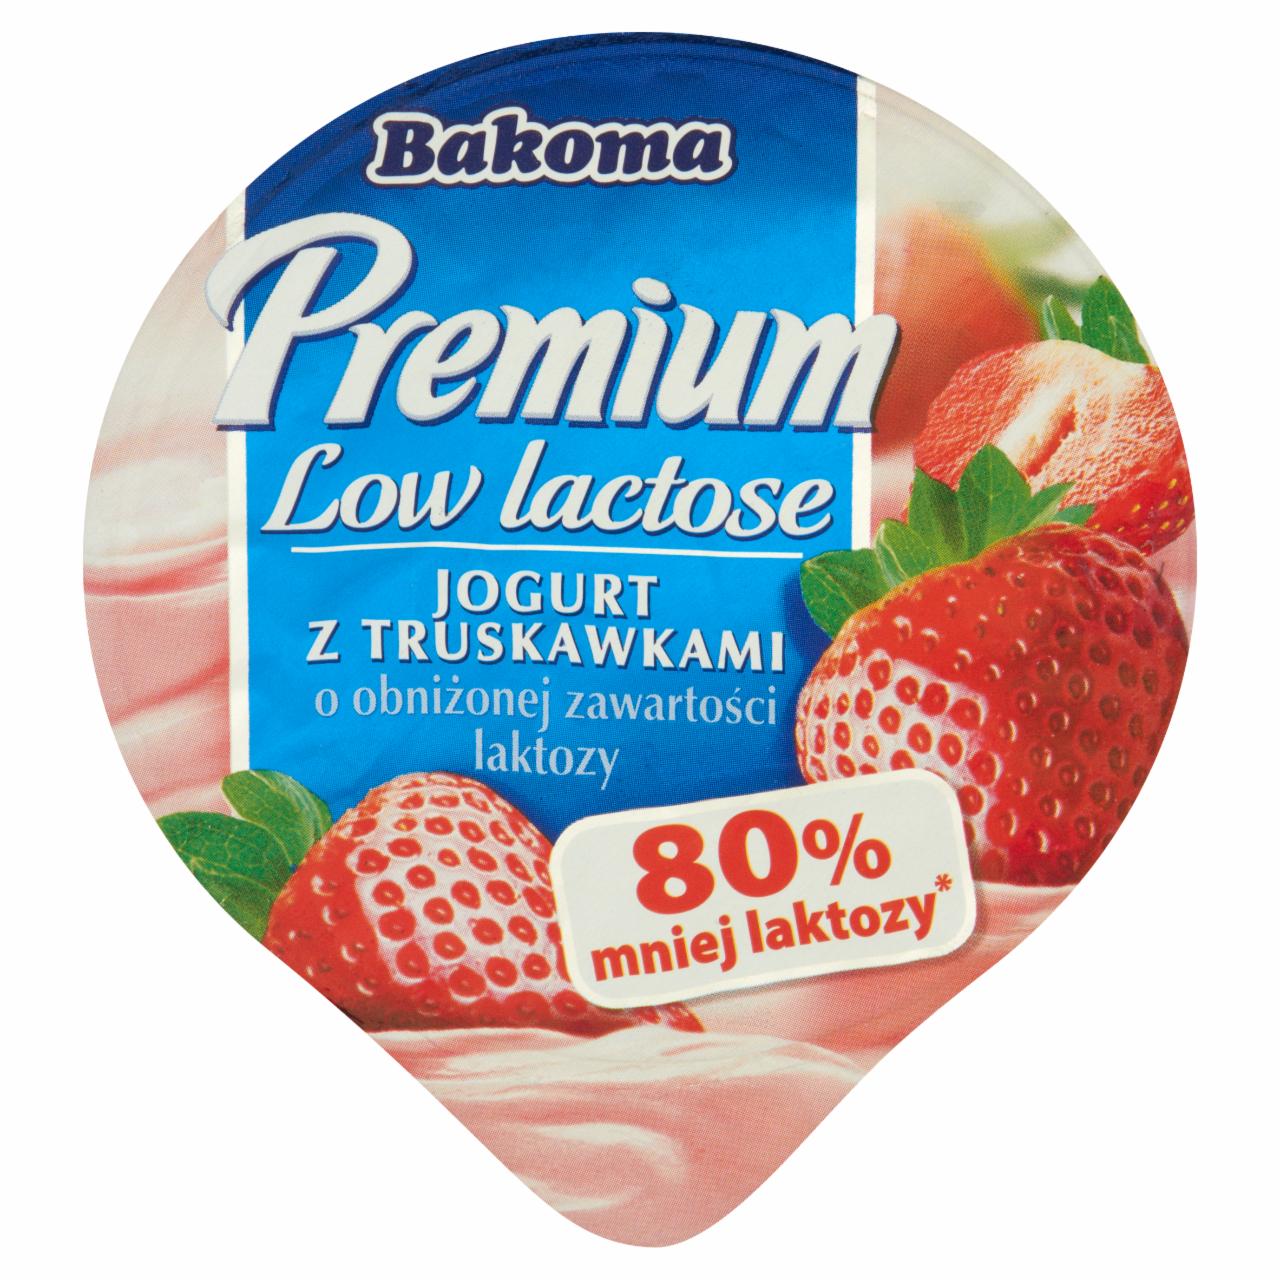 Zdjęcia - Bakoma Premium Low lactose Jogurt z truskawkami o obniżonej zawartości laktozy 140 g